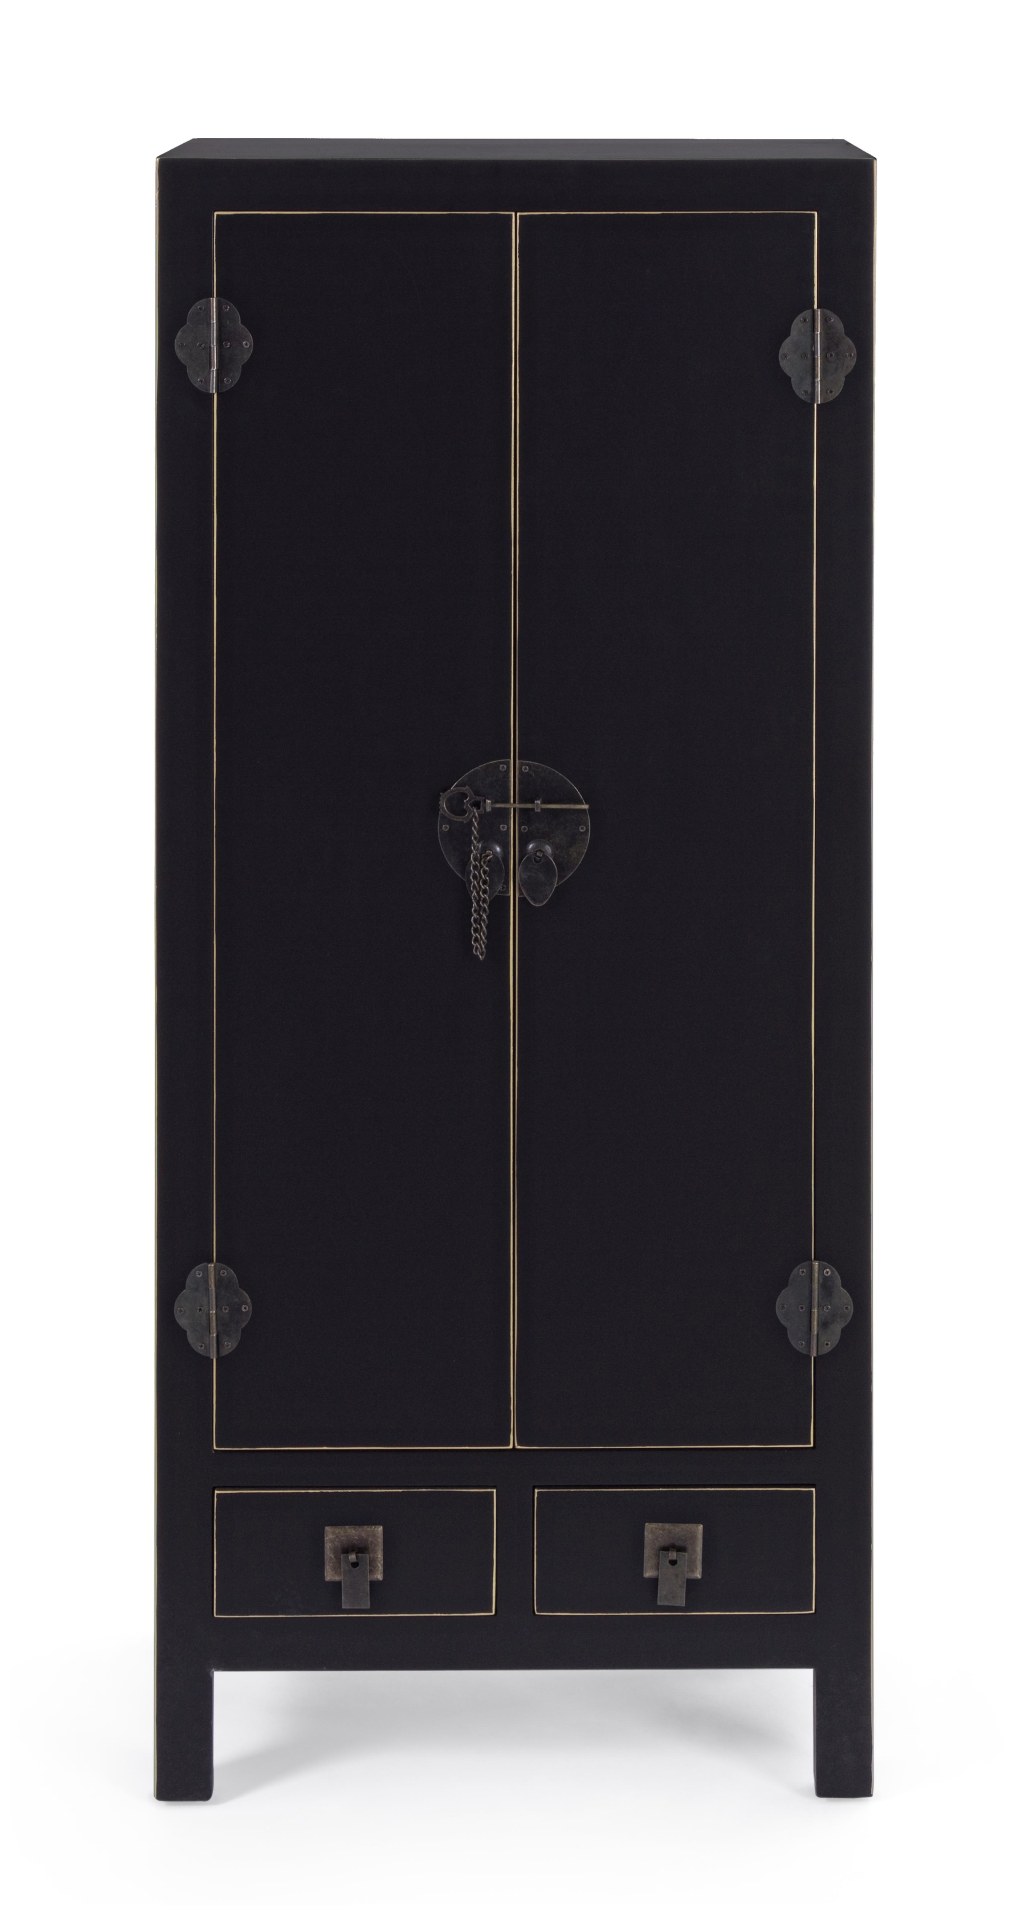 Die Kommode Pechino überzeugt mit ihrem klassischen Design. Gefertigt wurde sie aus Tannen-Holz, welches einen schwarzen Farbton besitzt. Das Gestell ist auch aus Tannen-Holz. Die Kommode verfügt über zwei Türen und zwei Schubladen. Die Breite beträgt 50 